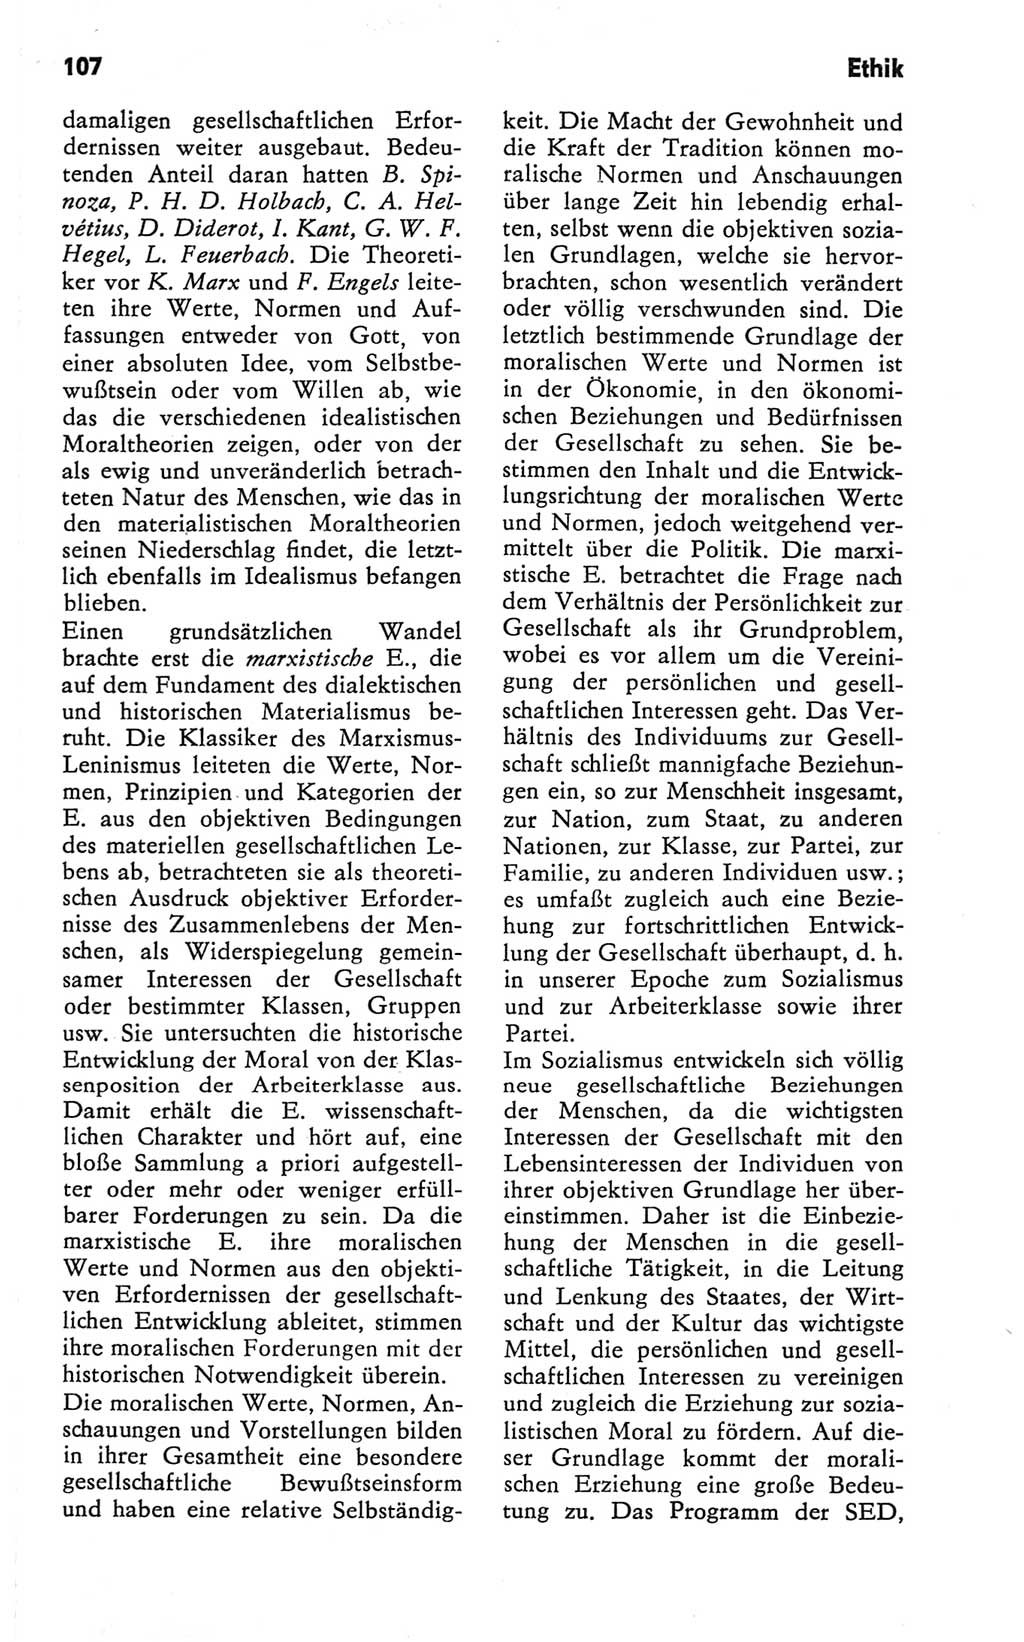 Kleines Wörterbuch der marxistisch-leninistischen Philosophie [Deutsche Demokratische Republik (DDR)] 1981, Seite 107 (Kl. Wb. ML Phil. DDR 1981, S. 107)